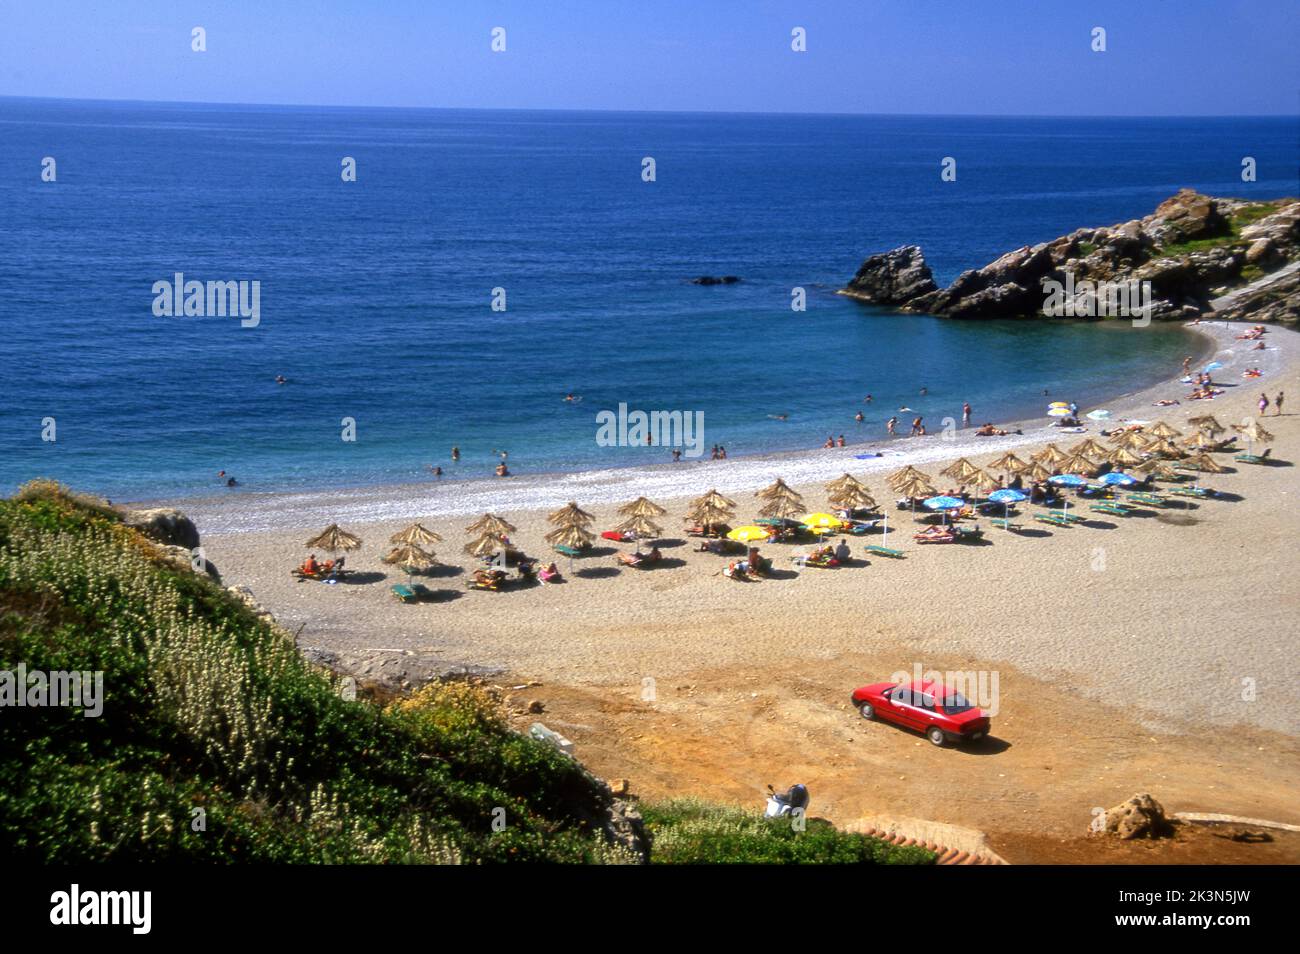 Una hermosa playa en la isla griega de Creta en el mar Egeo. Foto de stock